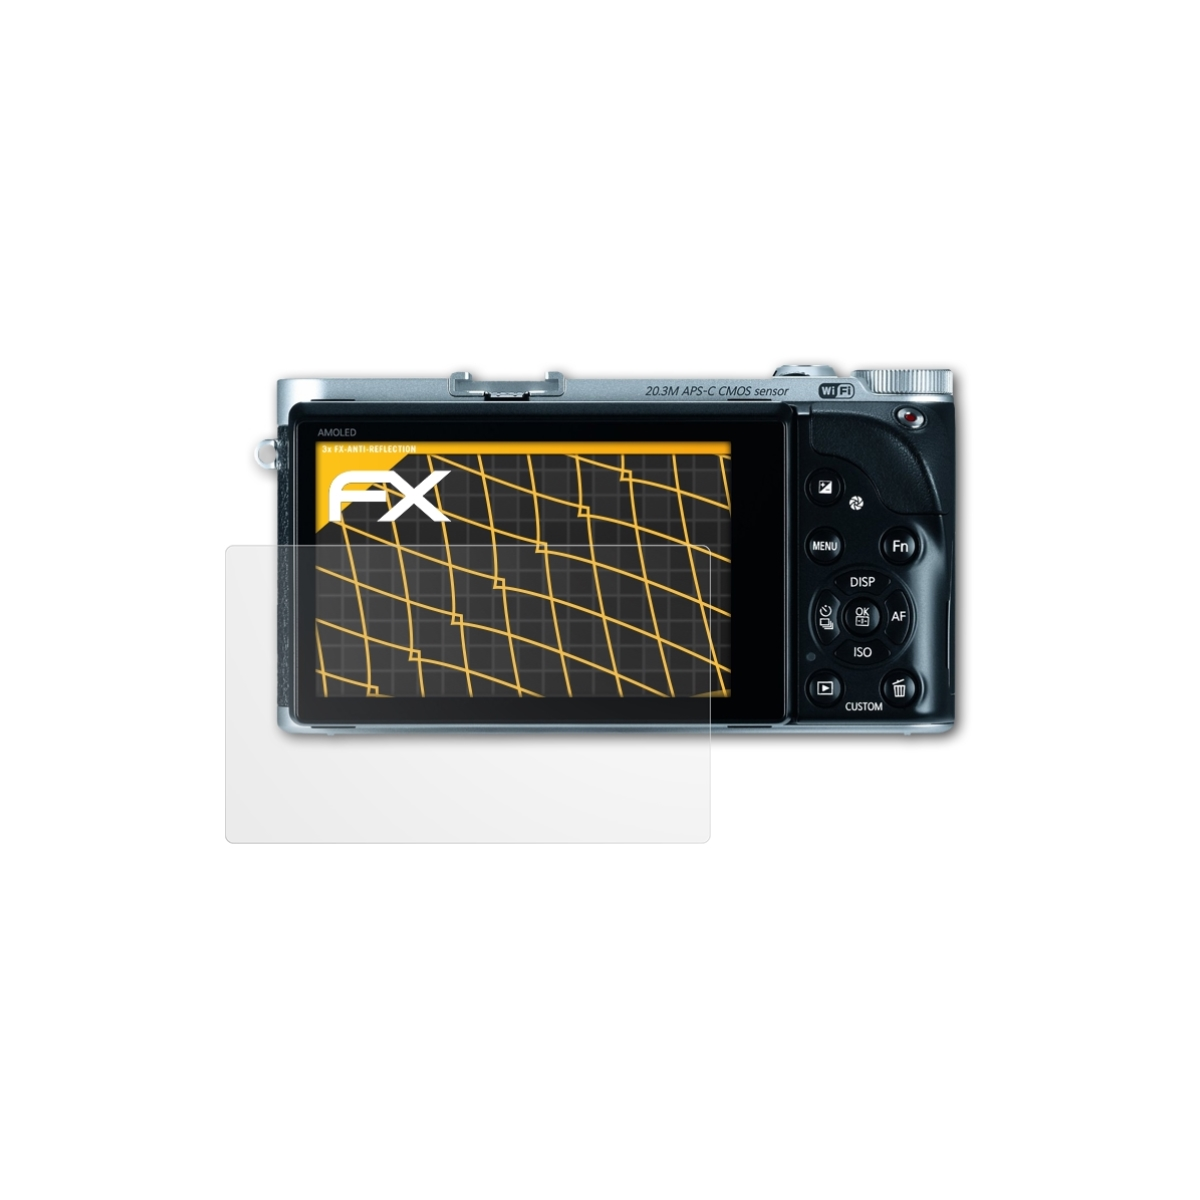 FX-Antireflex Displayschutz(für ATFOLIX 3x NX300) Samsung